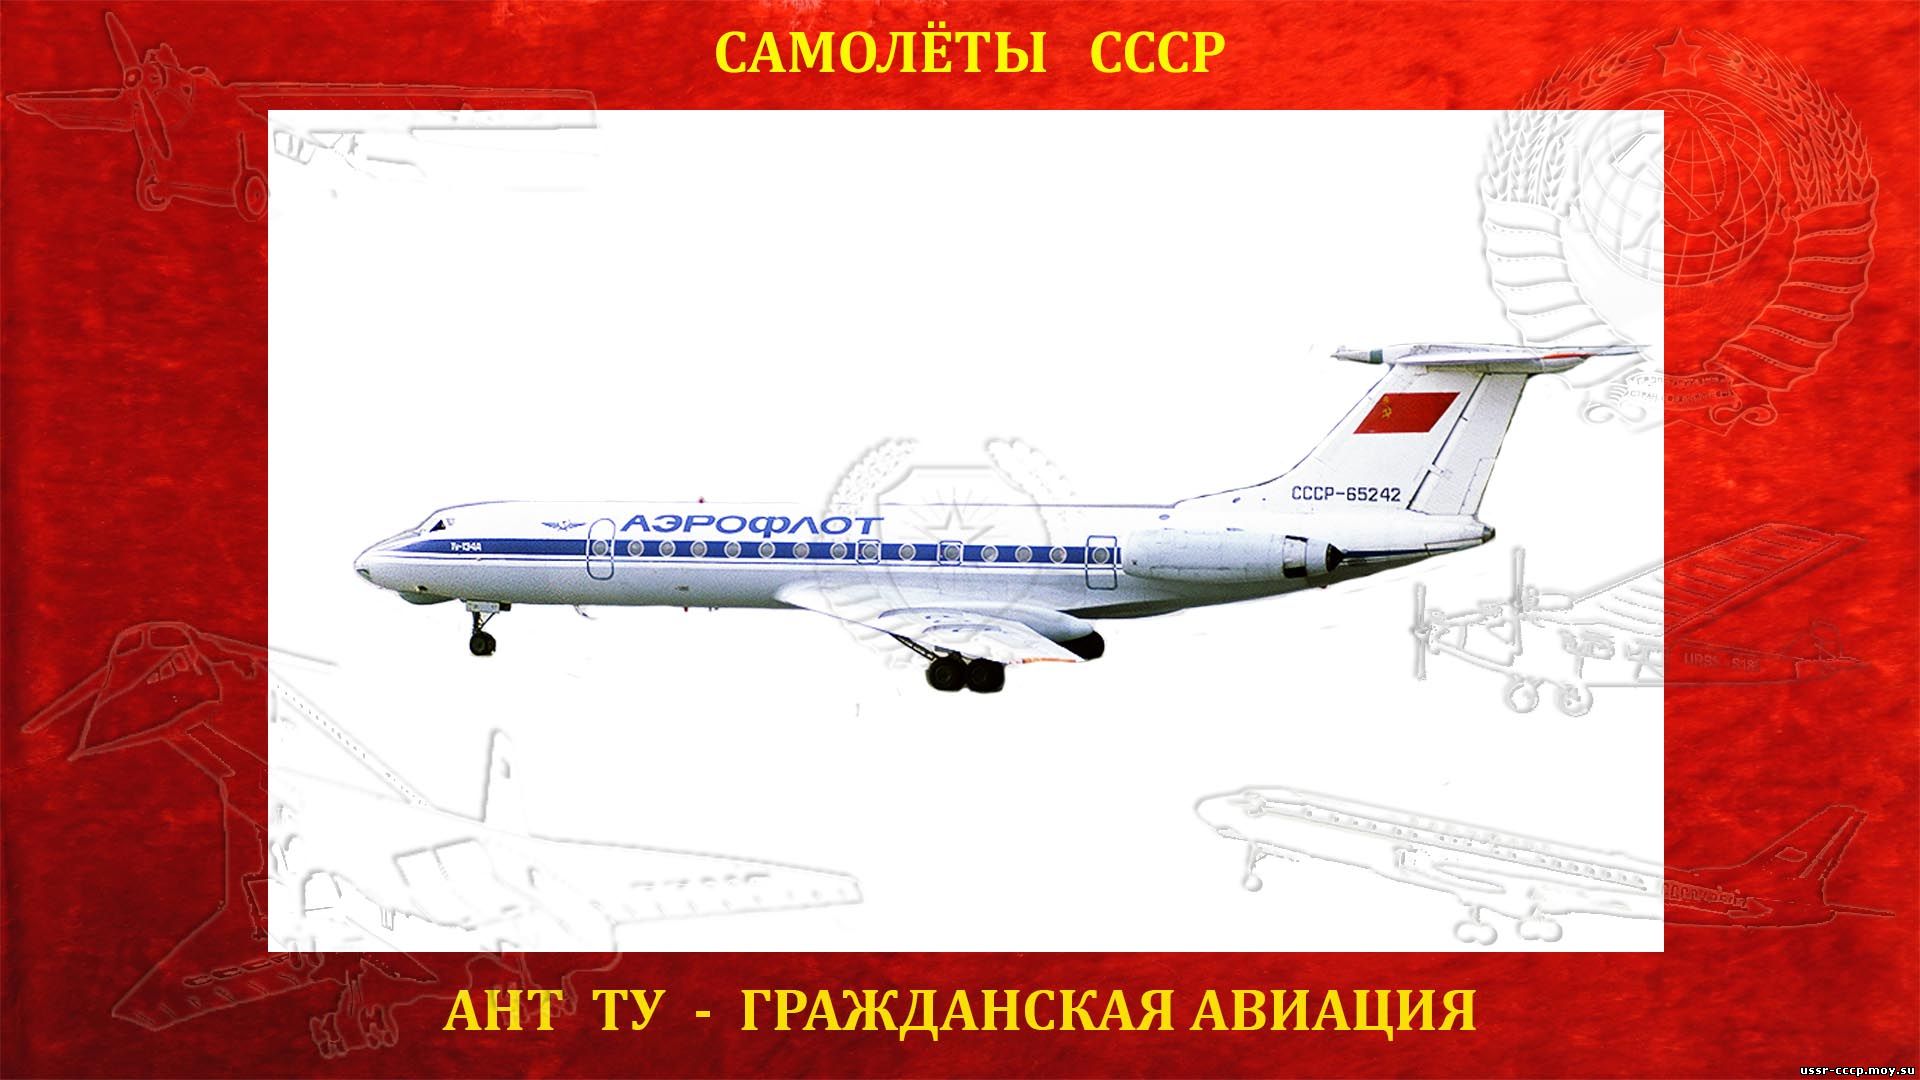 Ту-134 - Ближнемагистральный пассажирский самолет